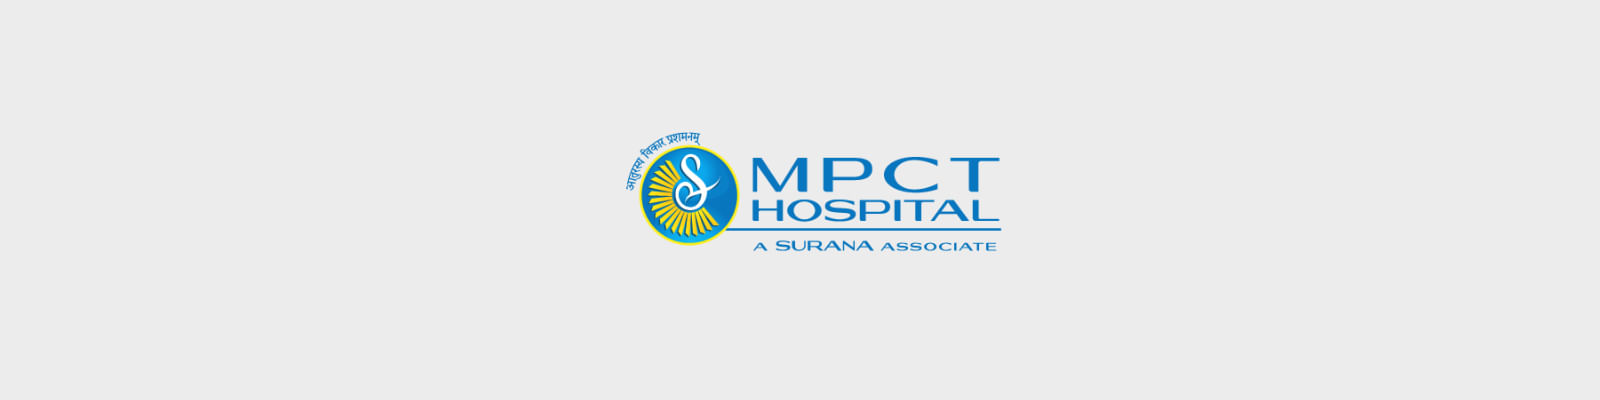 Mpct Hospital